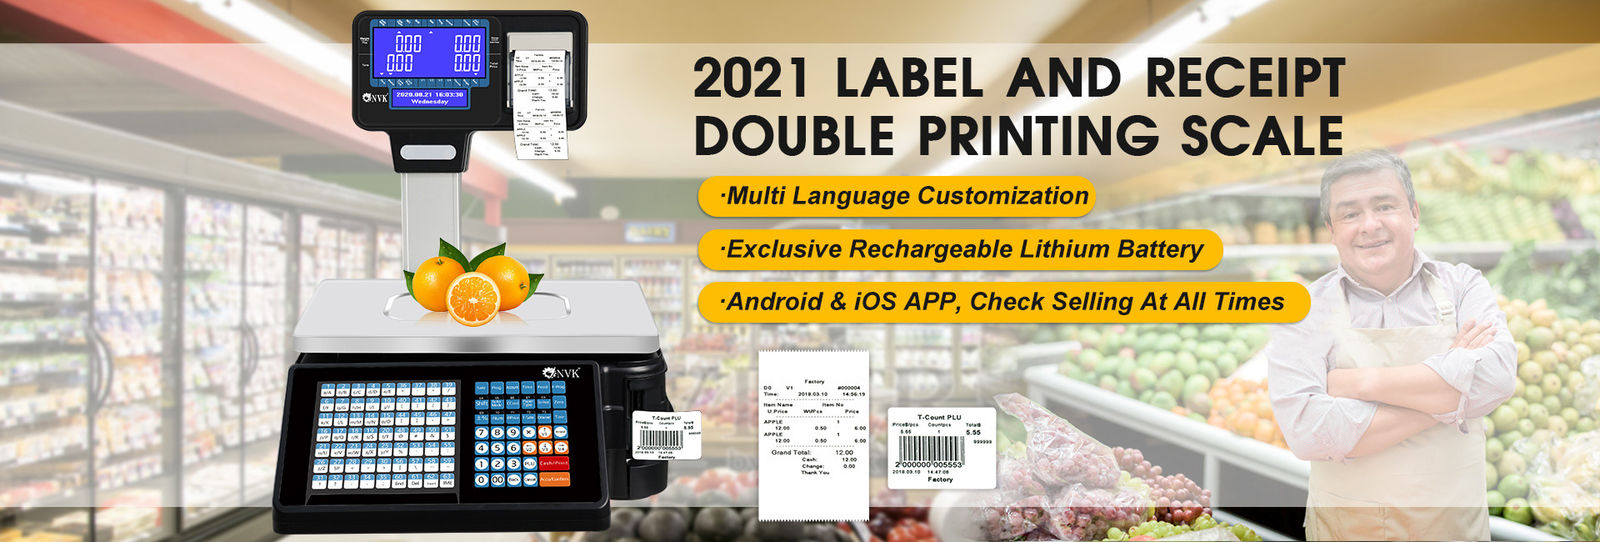 30 किग्रा सुपरमार्केट लेबल प्रिंटिंग स्केल डिजिटल वजनी स्केल डिजिटल स्केल